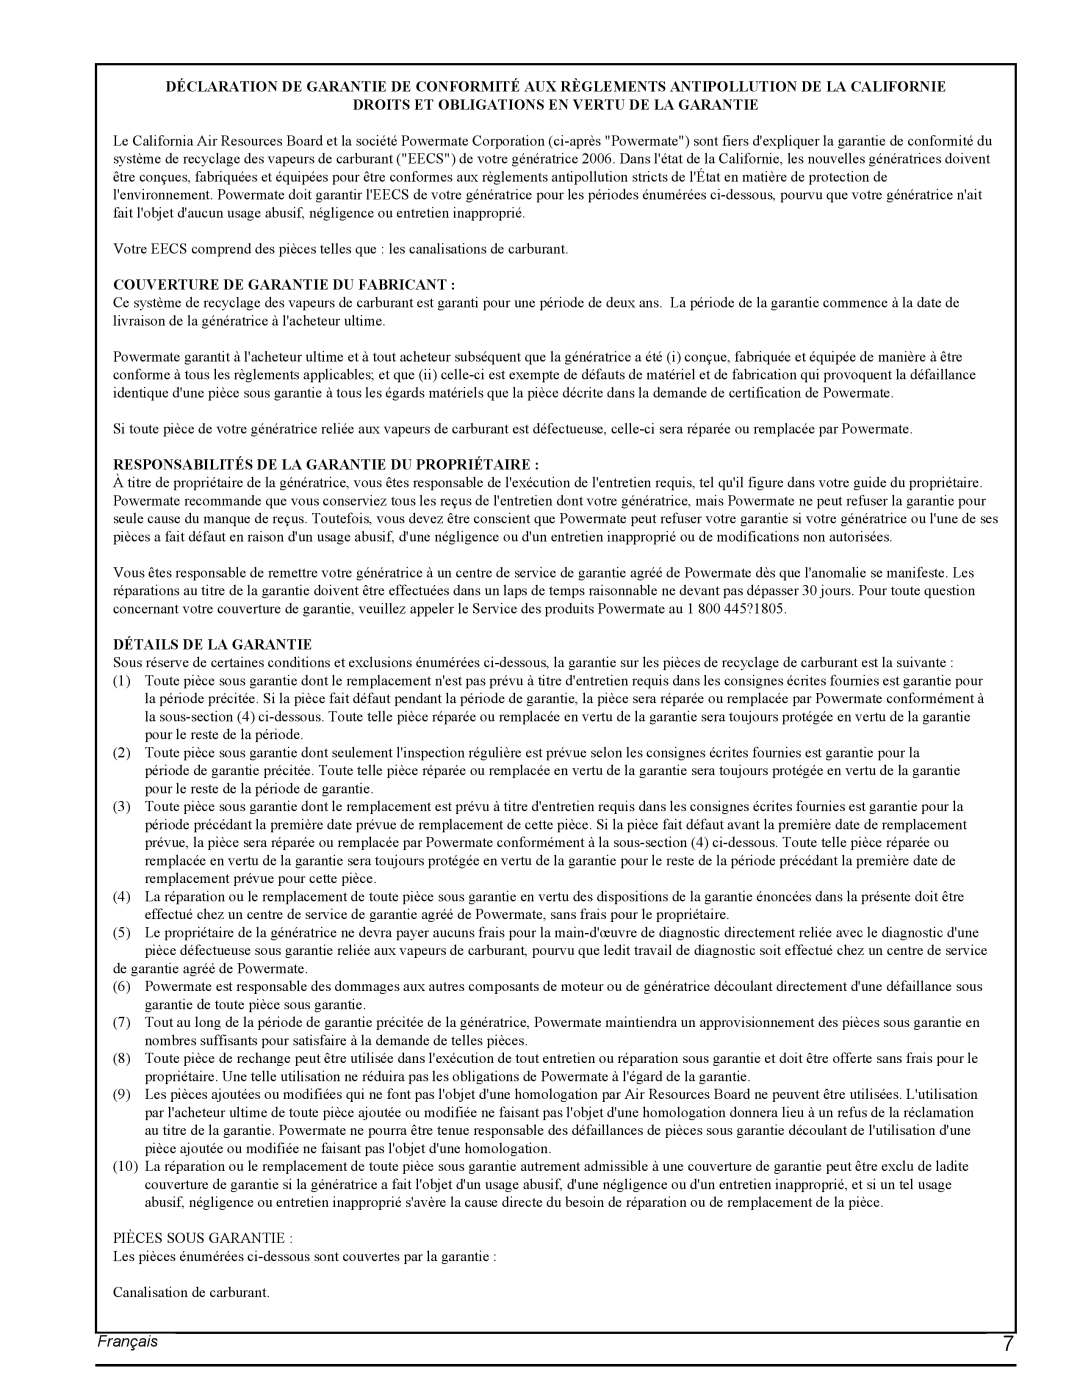 Powermate PMC435251 manual Français, Droits Et Obligations En Vertu De La Garantie, Couverture De Garantie Du Fabricant 